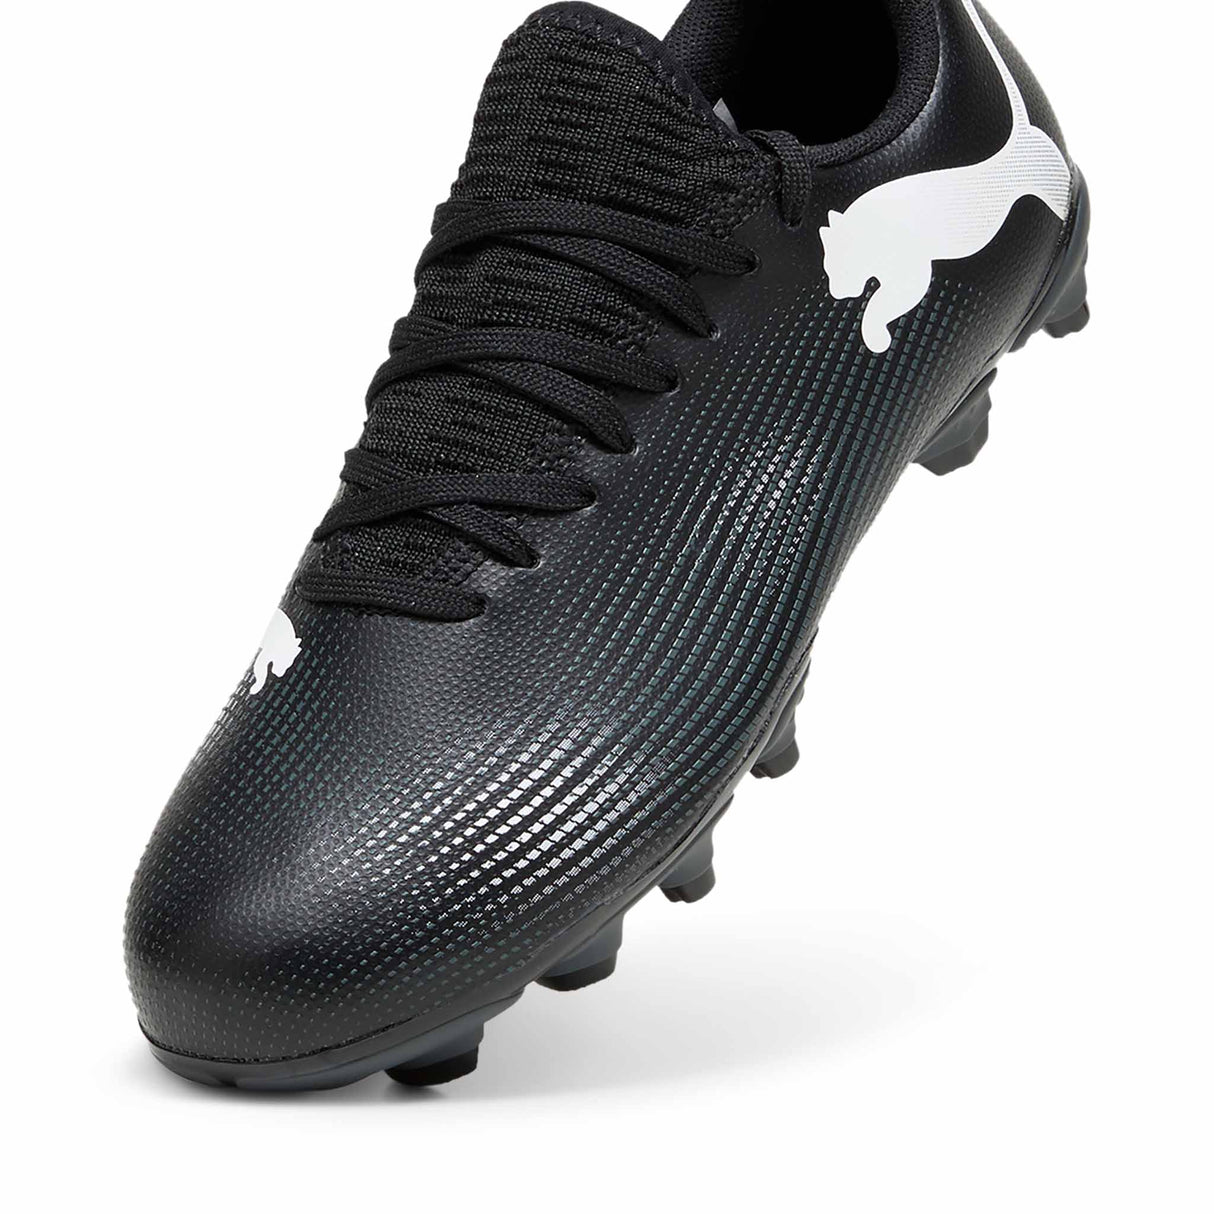 Puma Future 7 Play FG/AG chaussures de soccer à crampons junior - Puma Black / Puma White